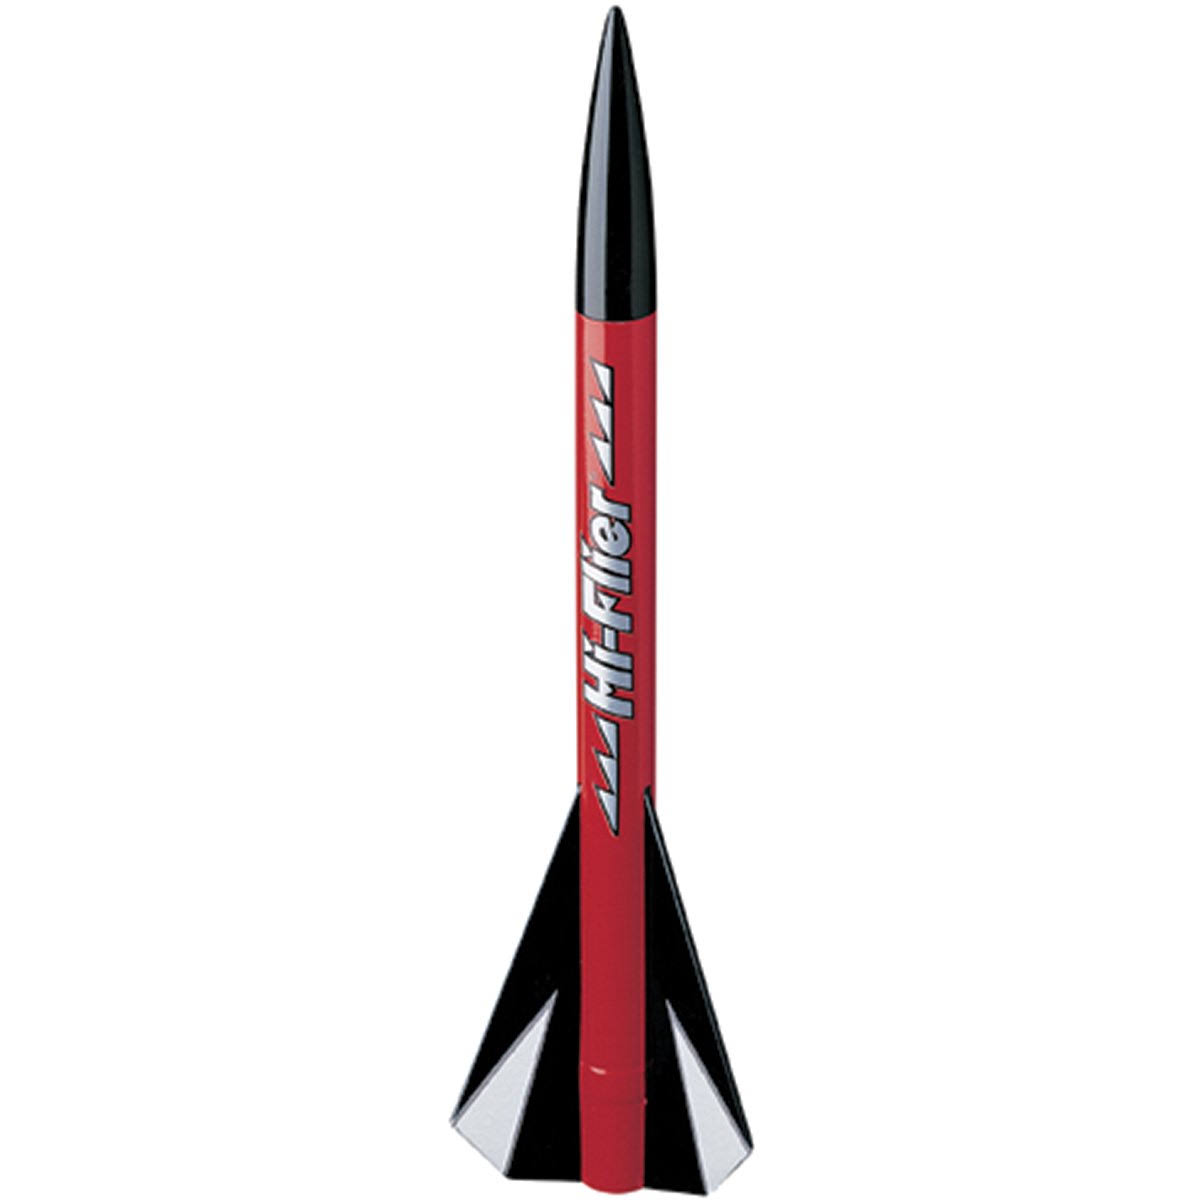 Estes EST2178 Hi-Flier Flying Model Rocket Kit - 12"